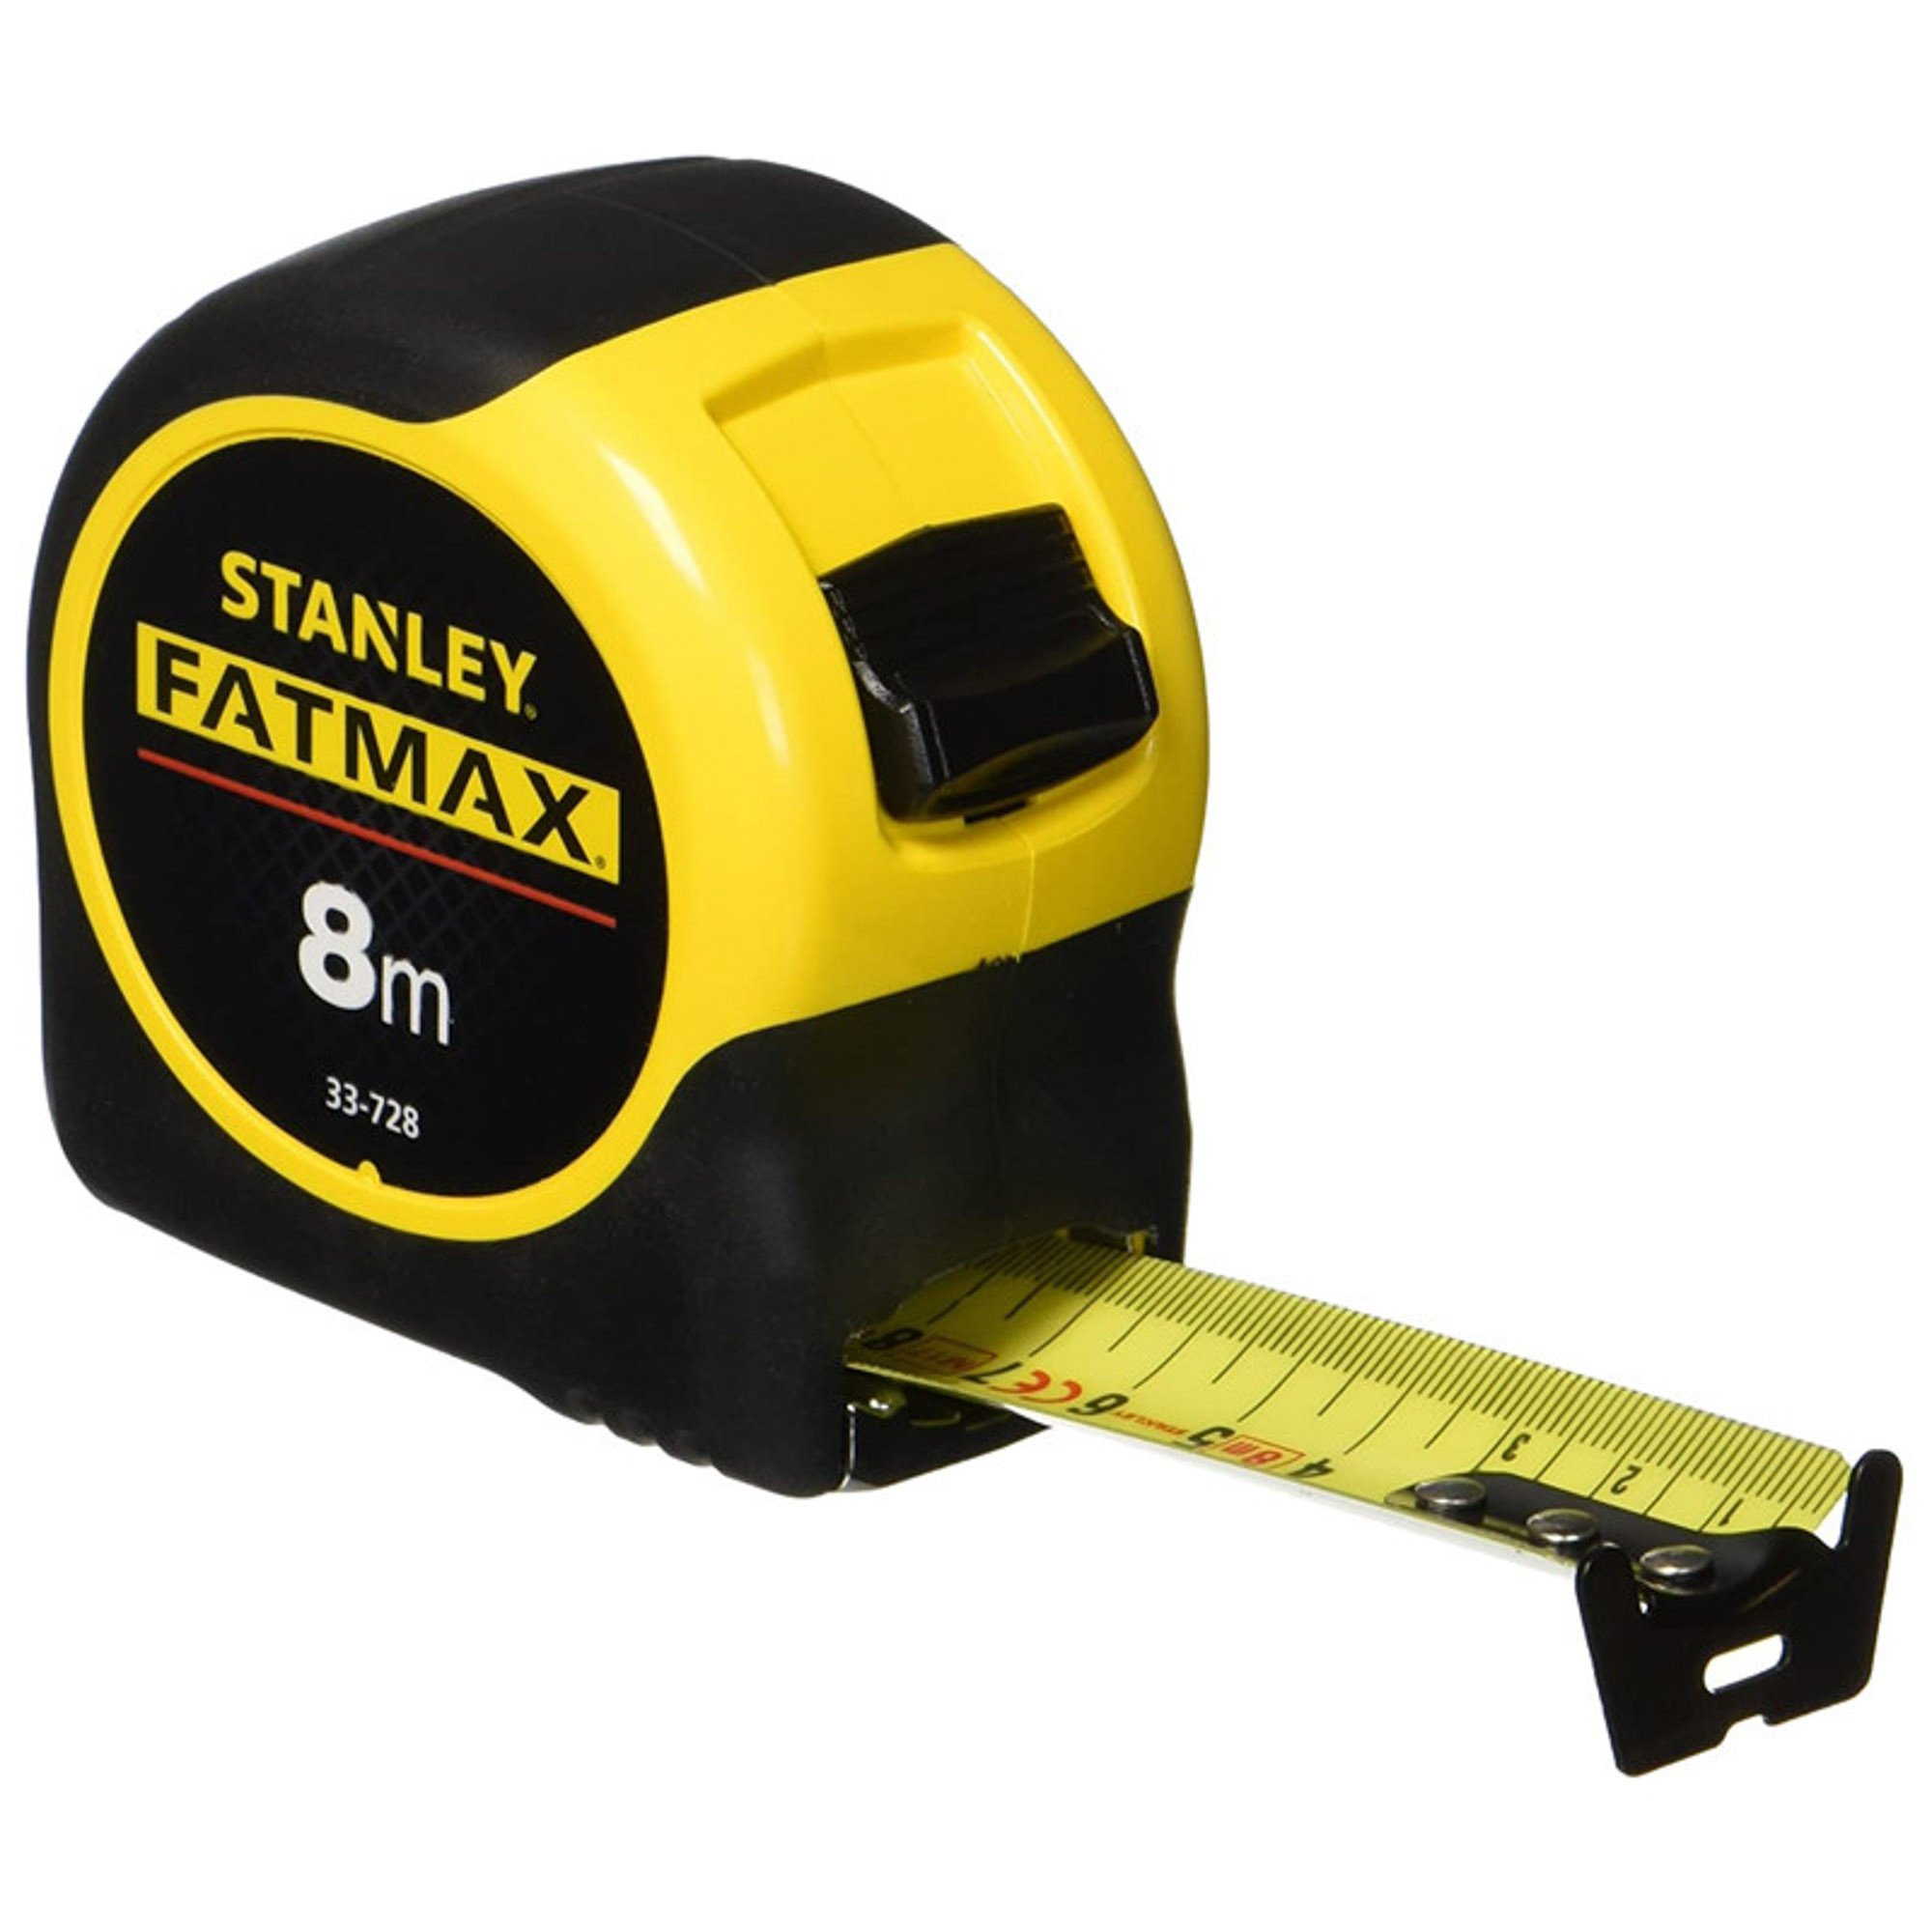 斯坦利0-33-728 FATMAX公制胶带测量带有刀片8M